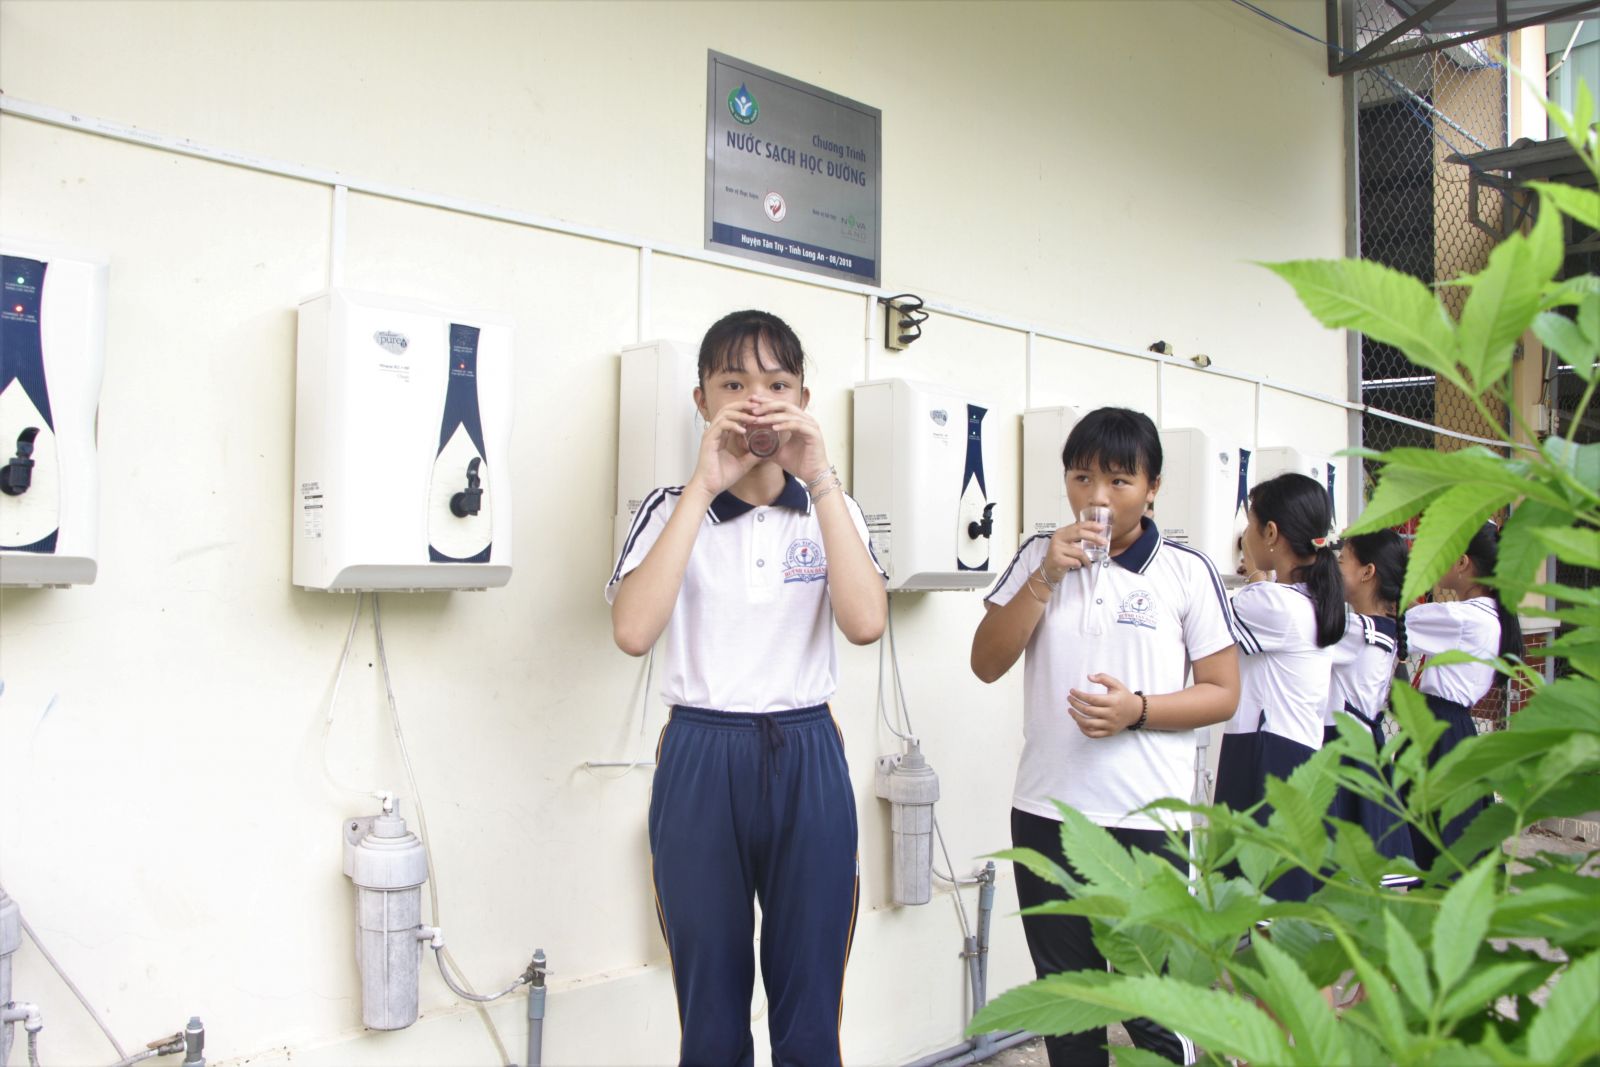 Hiệu quả của chương trình Nước sạch học đường rất dễ nhìn thấy. Học sinh các trường có điều kiện uống nước sạch bảo đảm chất lượng và nhà trường giảm bớt chi phí mua nước cho học sinh